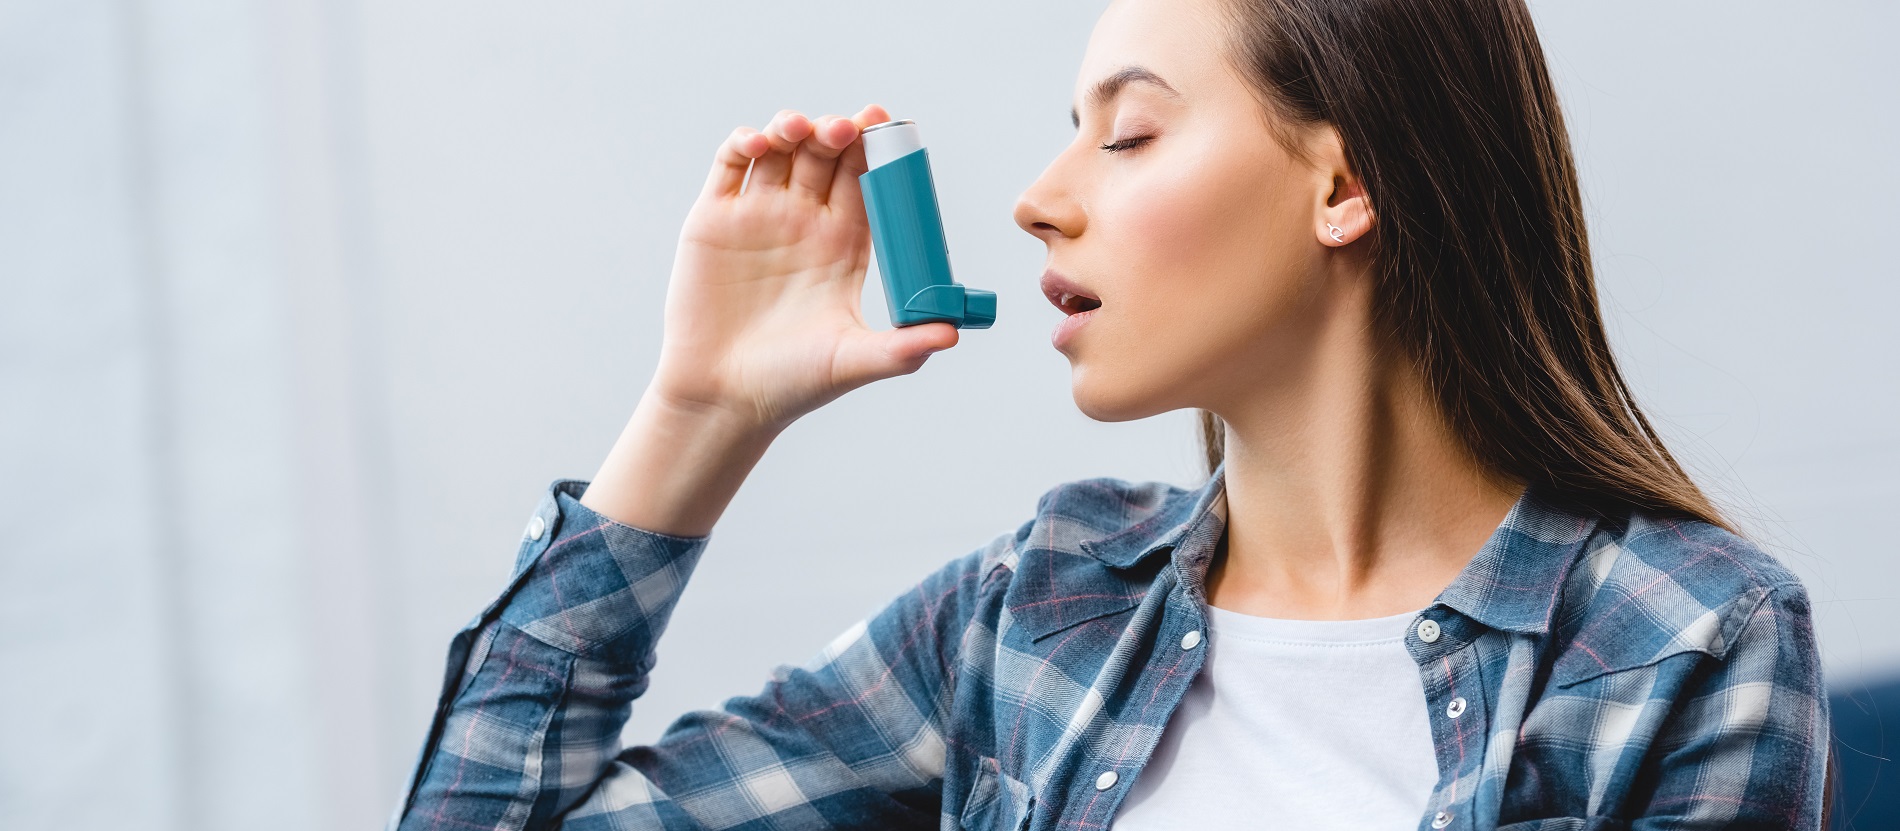 Astma - w Polsce mija 7 lat od pierwszych objawów do diagnozy choroby